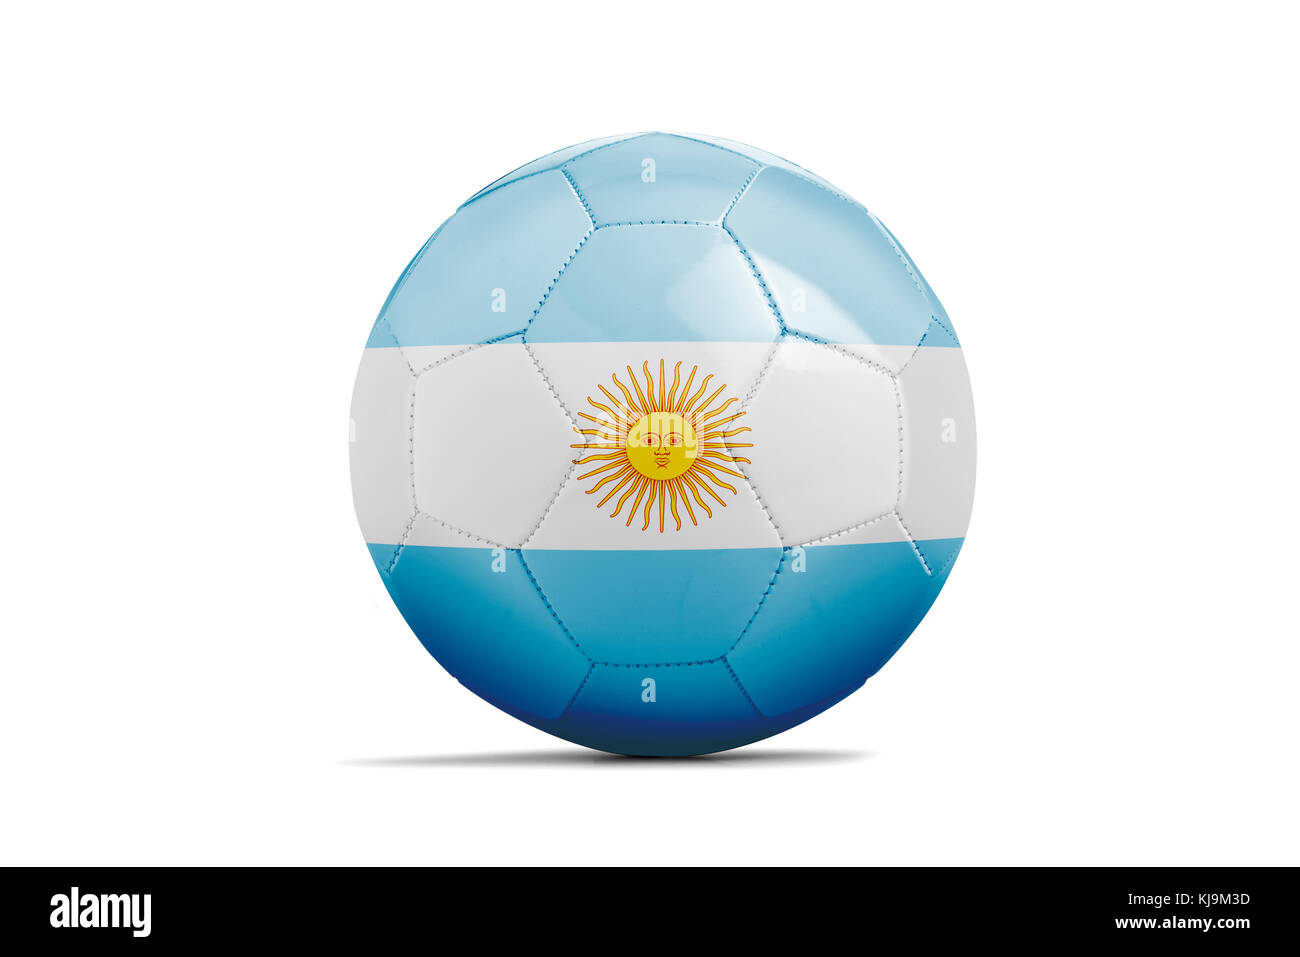 Pelota de fútbol con el equipo aislado, Rusia bandera argentina de 2018. Foto de stock